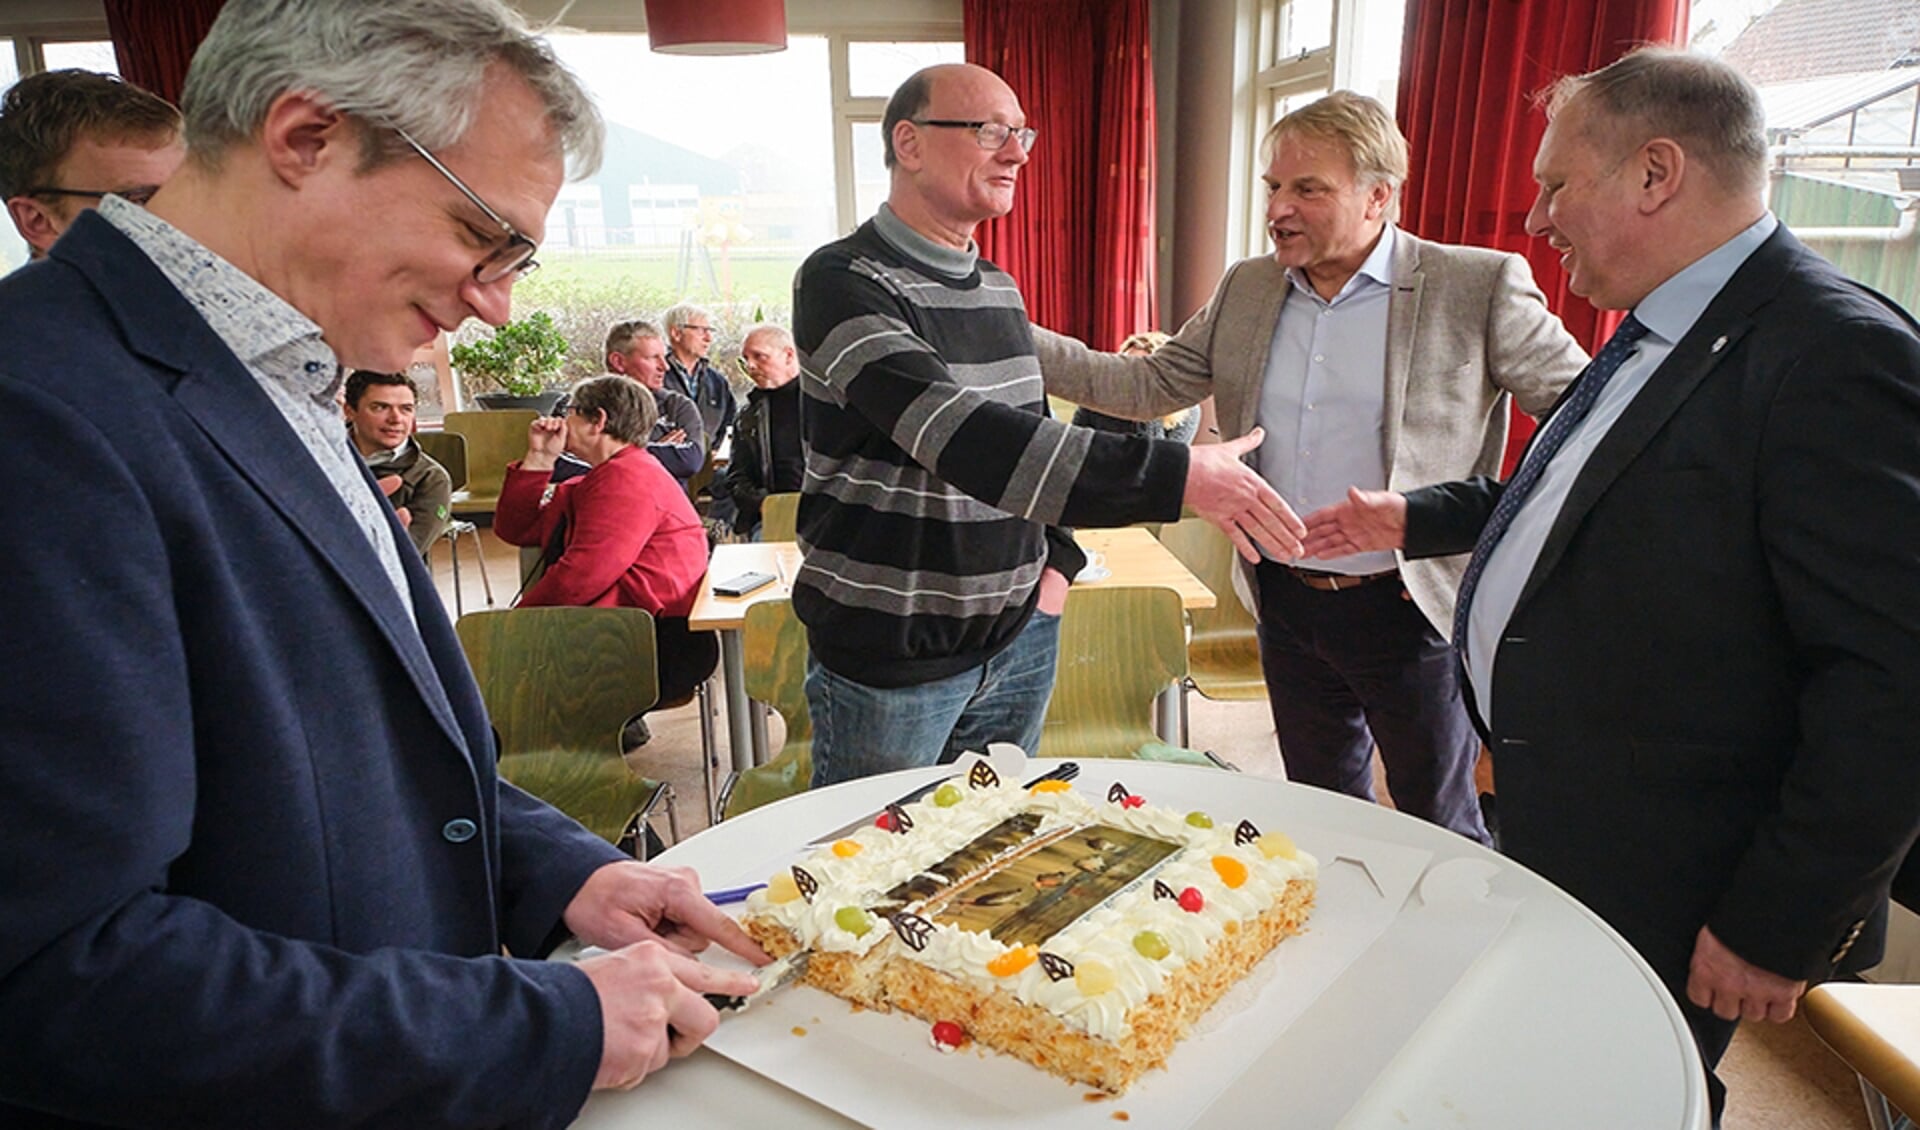 De ondertekening werd gevierd met een uitstekende taart! (foto: Roel Dijkstra)